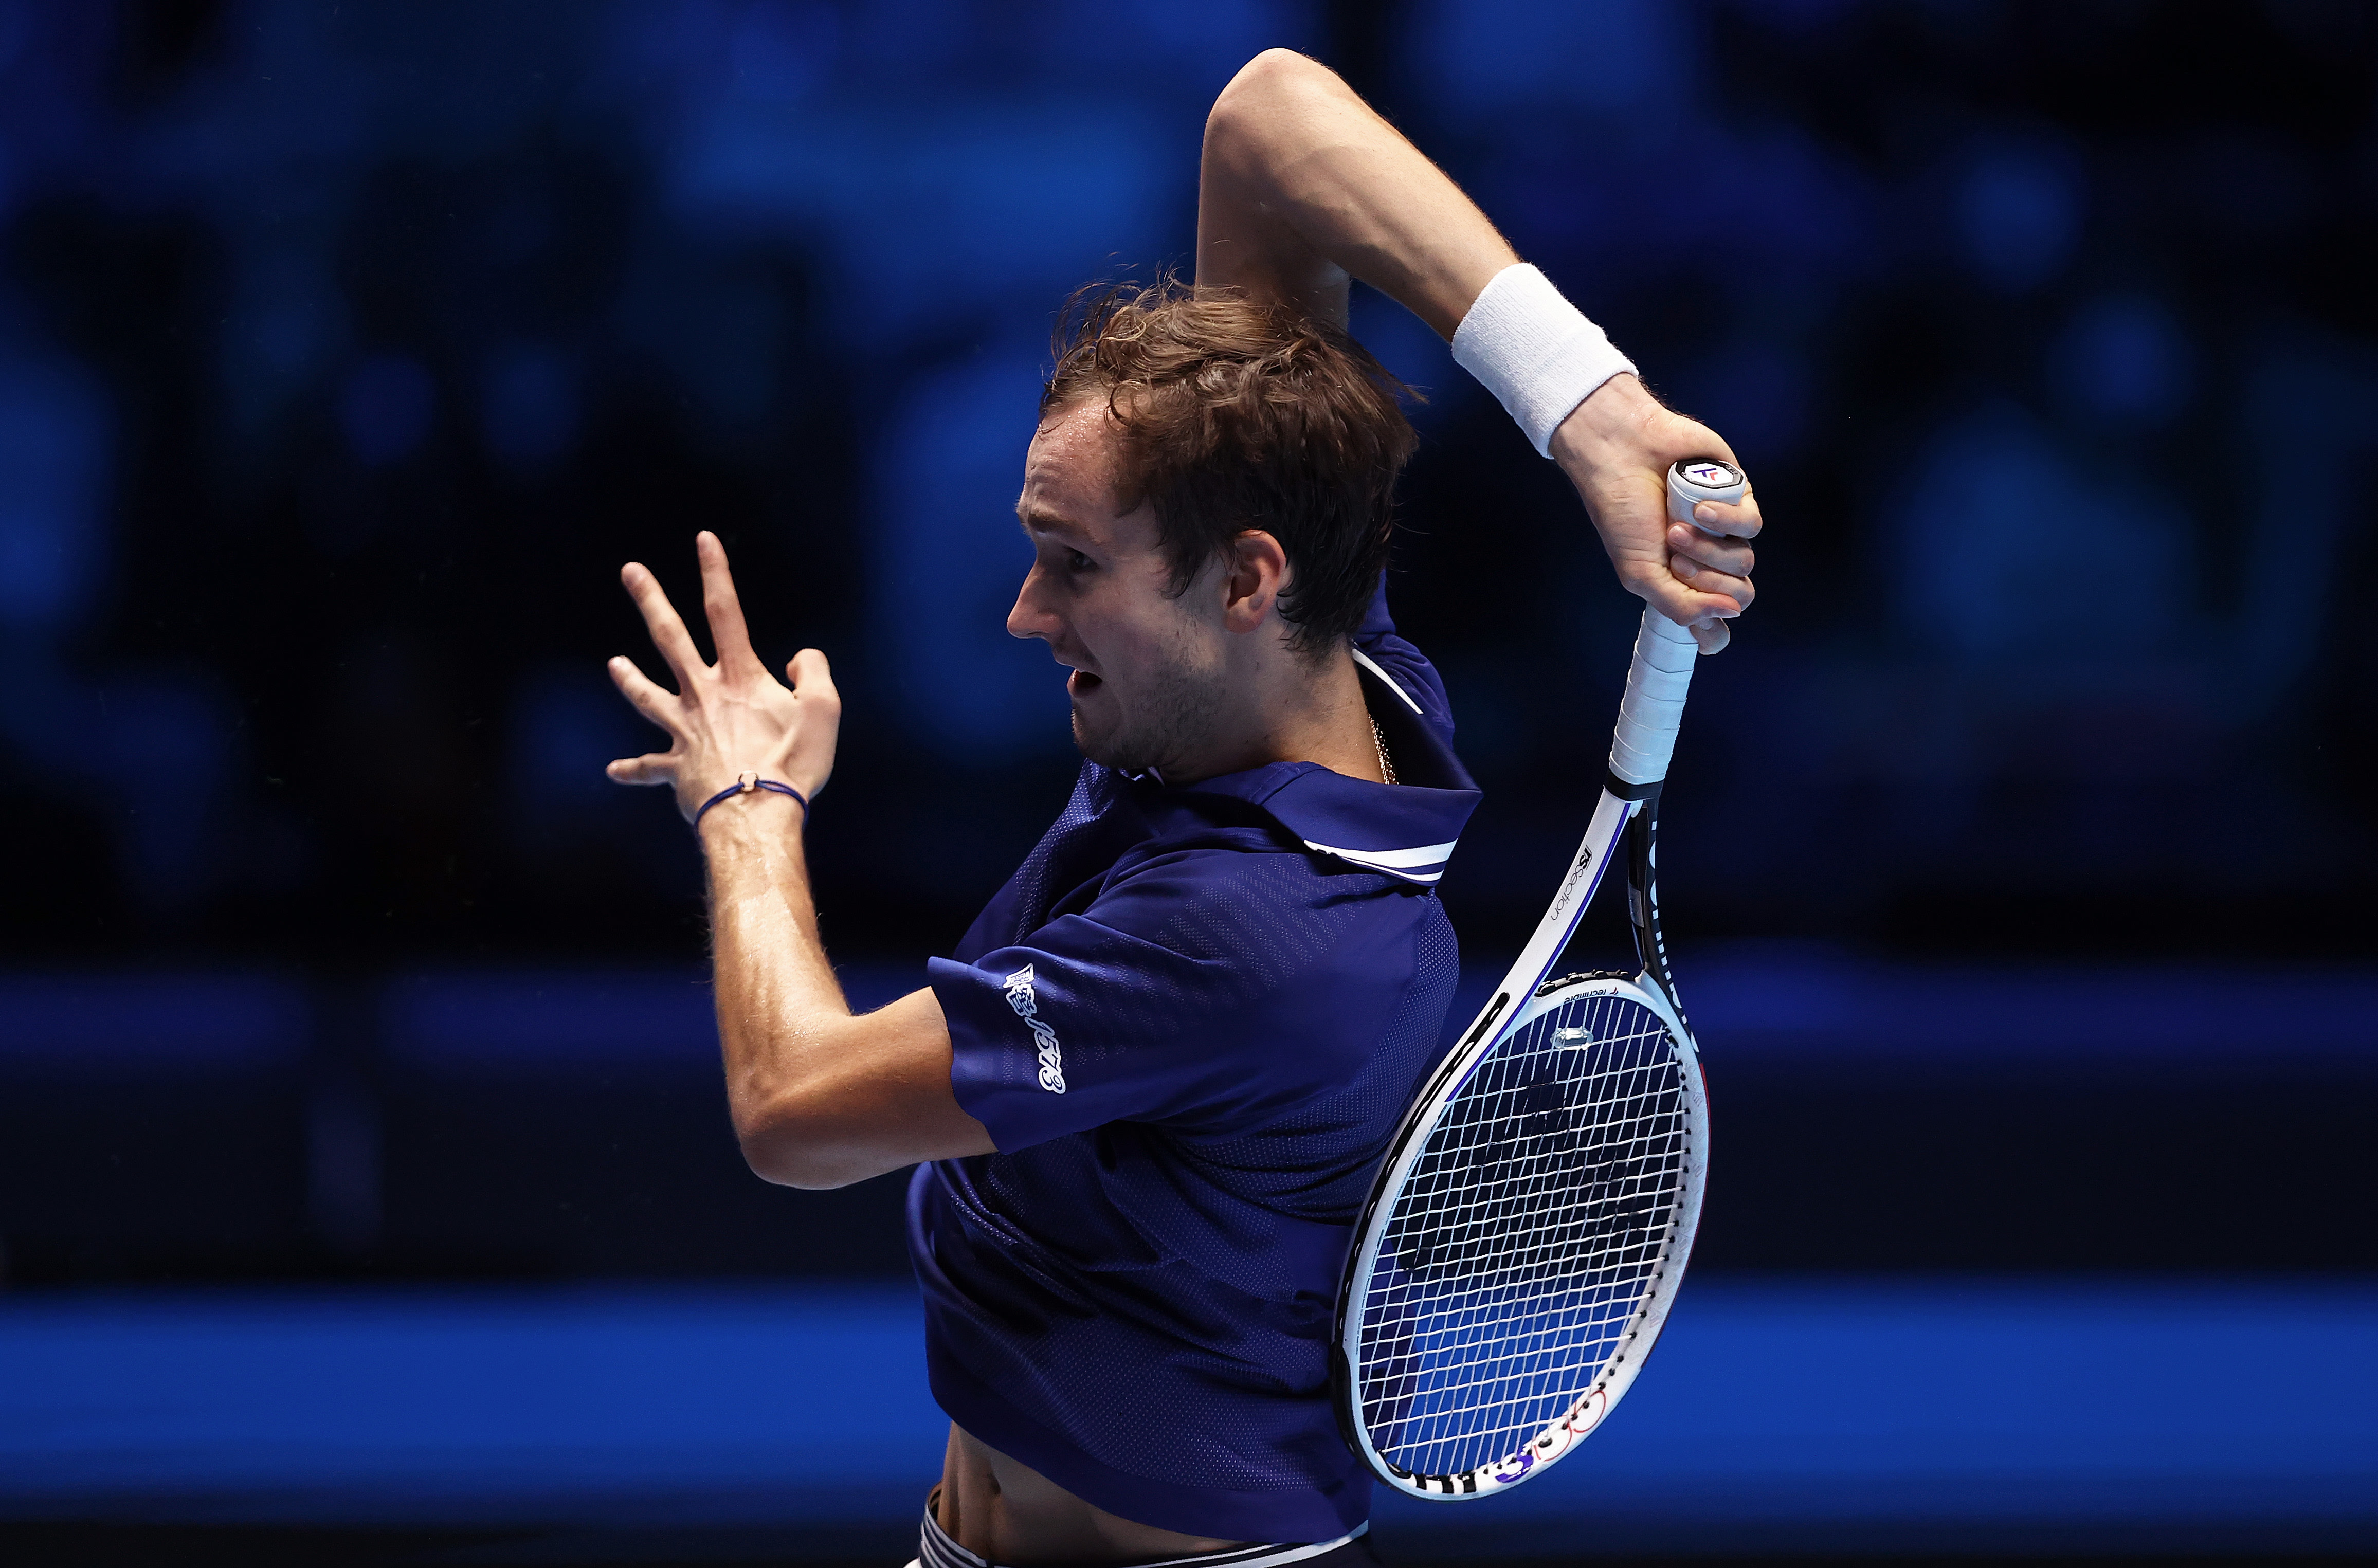 Медведев теннис. Медведев Зенит теннис. Медведев теннис в костюме. Атр теннис результаты